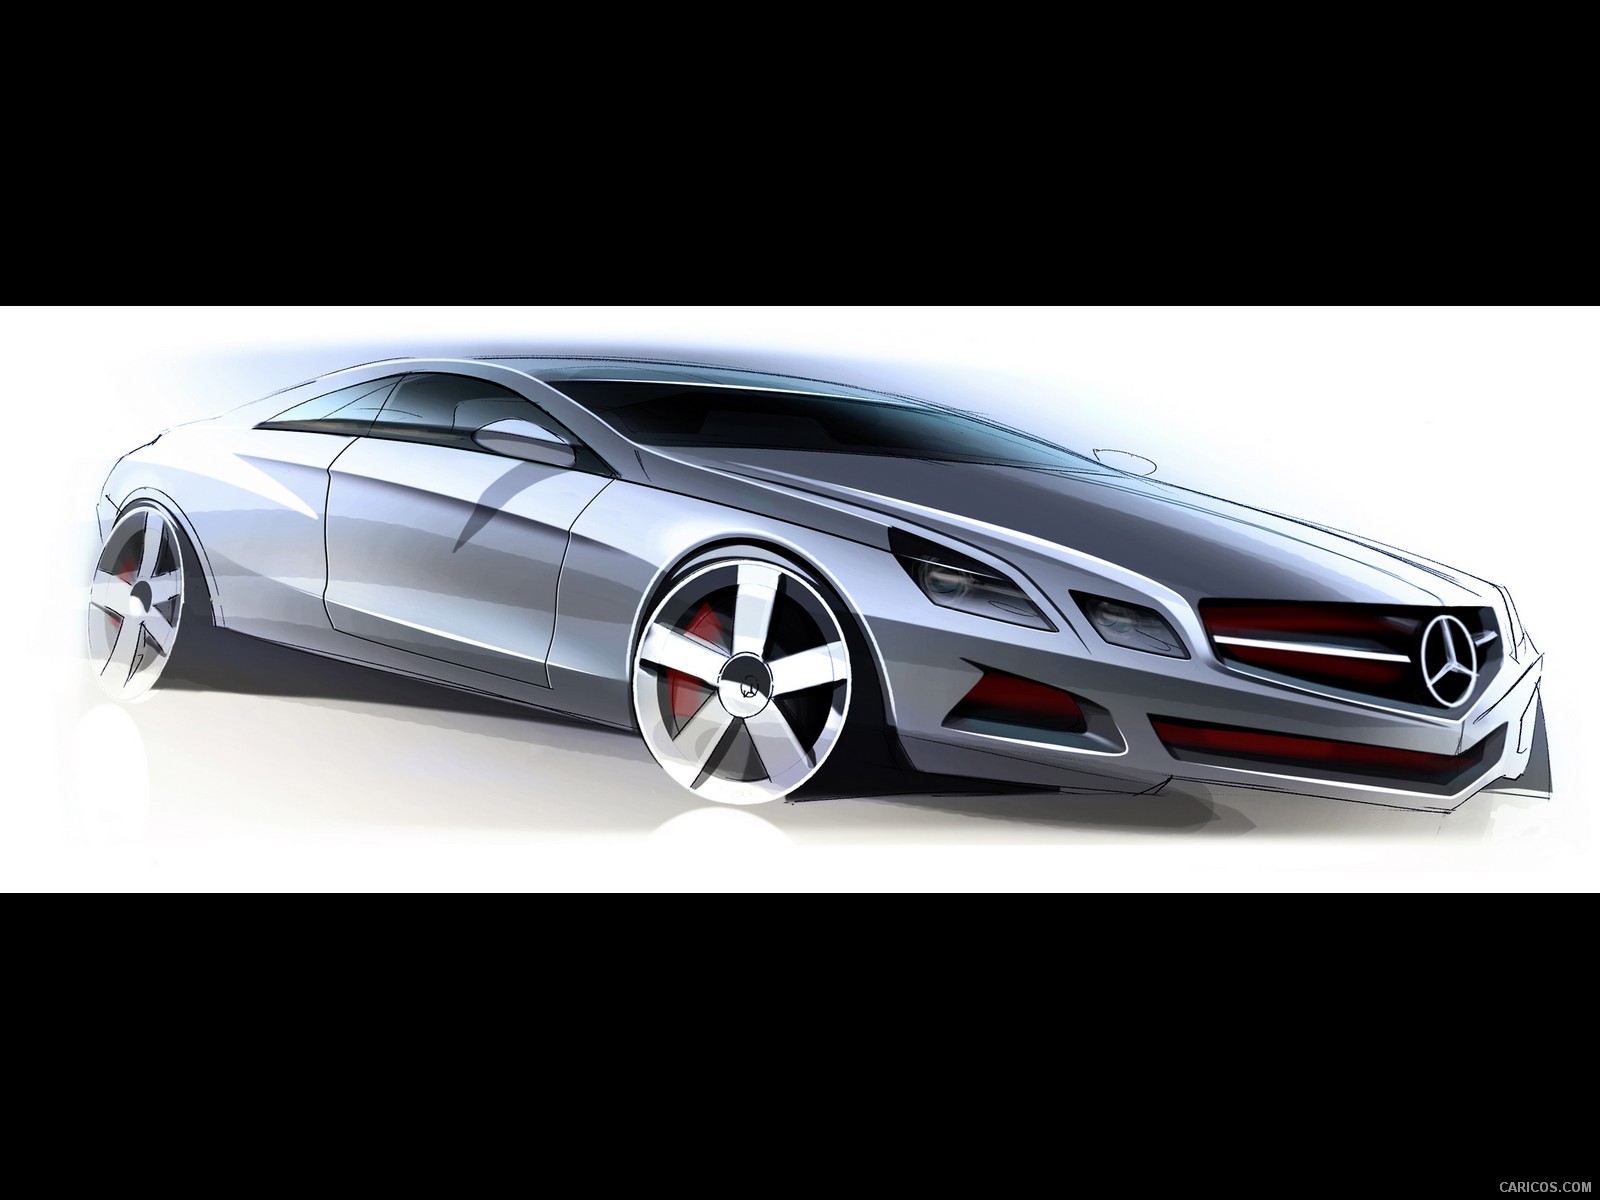 2010 Mercedes-Benz E-Class Coupe  - Design Sketch, #156 of 213